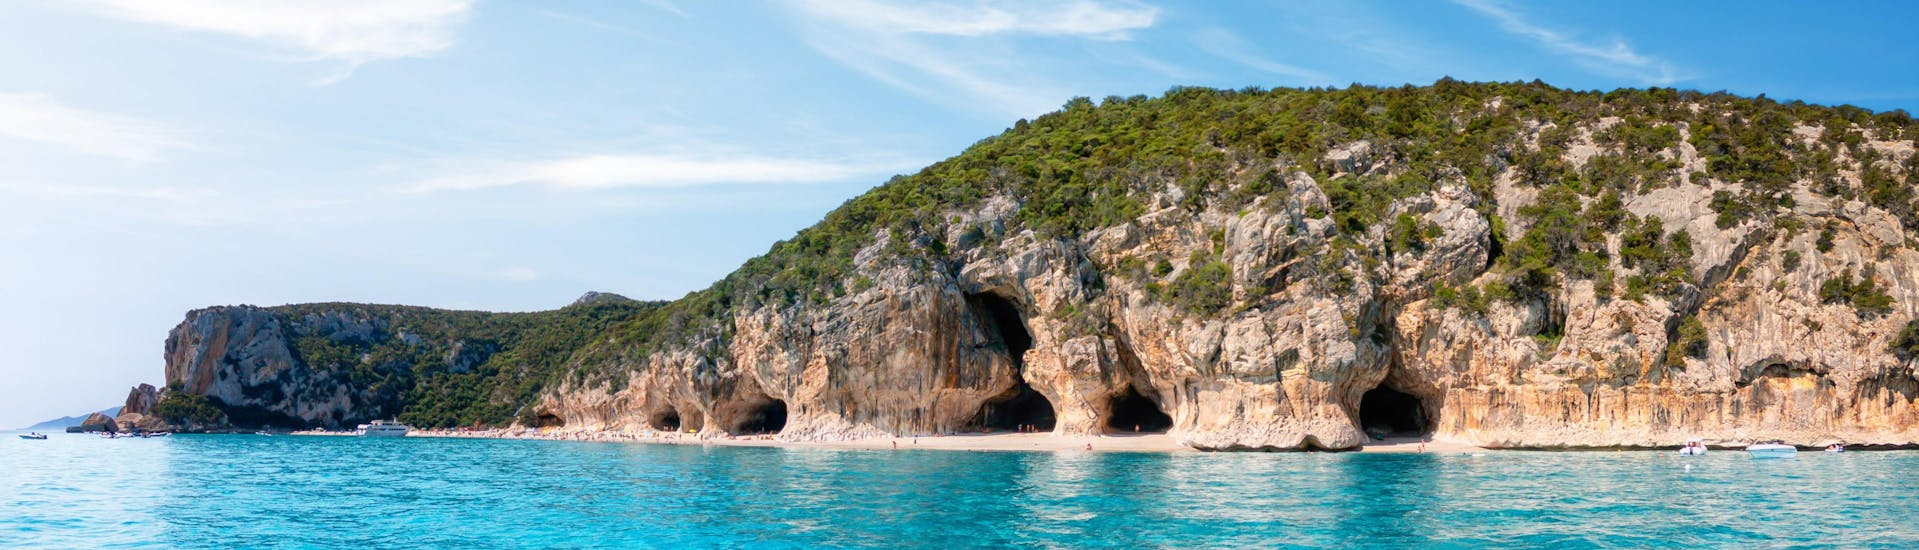 Bild der Höhlen an der Küste von Cala Luna, Sardinien, einem beliebten Ziel für Bootsausflüge.